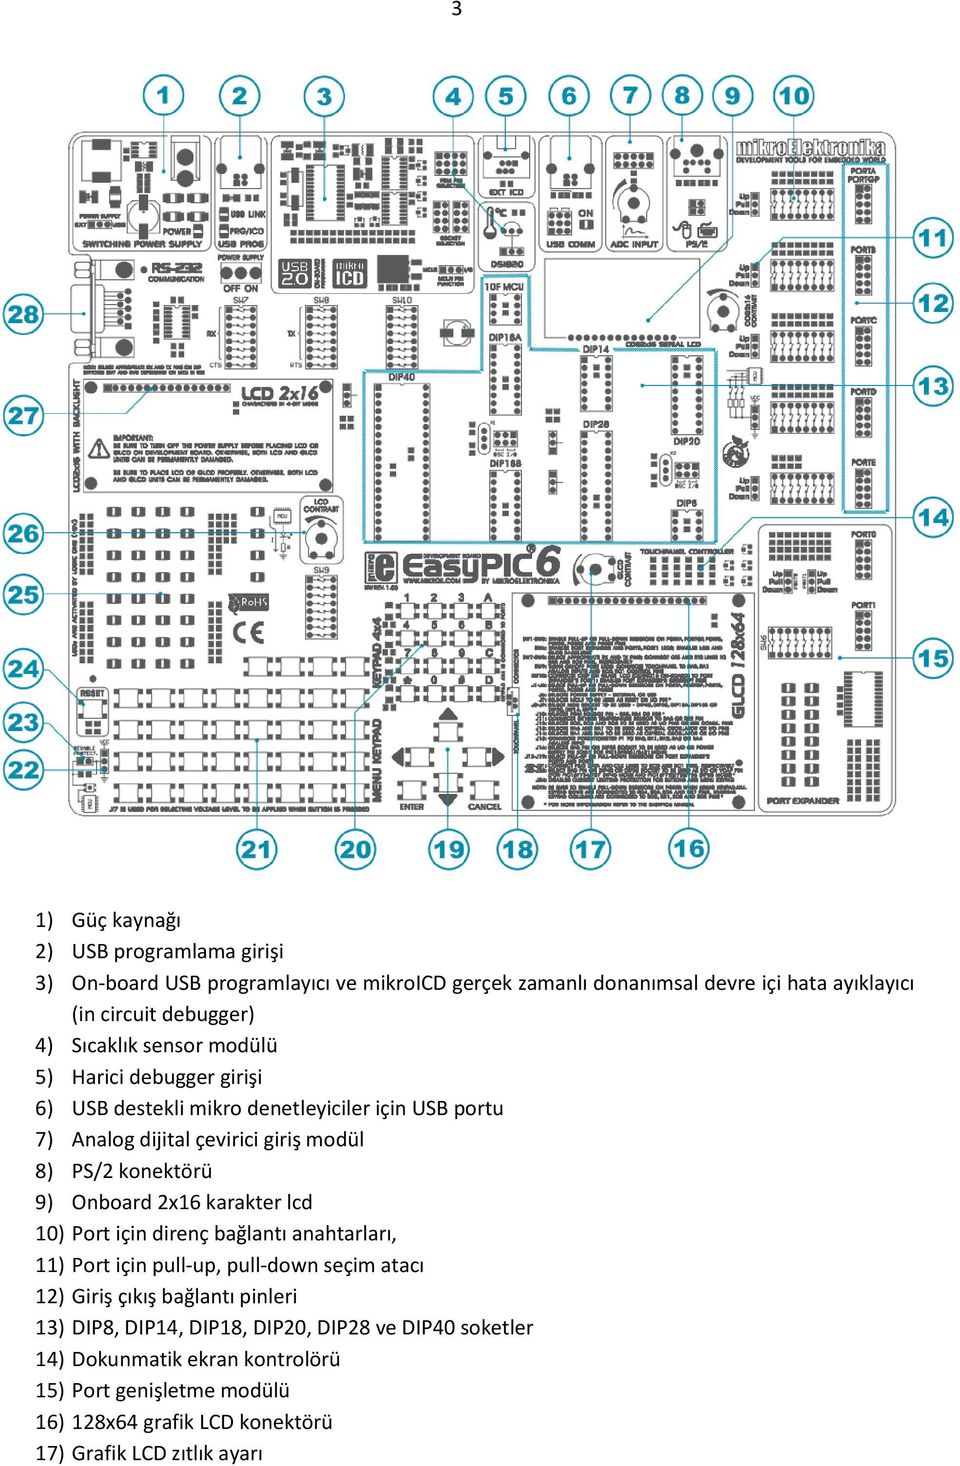 9) Onboard 2x16 karakter lcd 10) Port için direnç bağlantı anahtarları, 11) Port için pull-up, pull-down seçim atacı 12) Giriş çıkış bağlantı pinleri 13) DIP8,